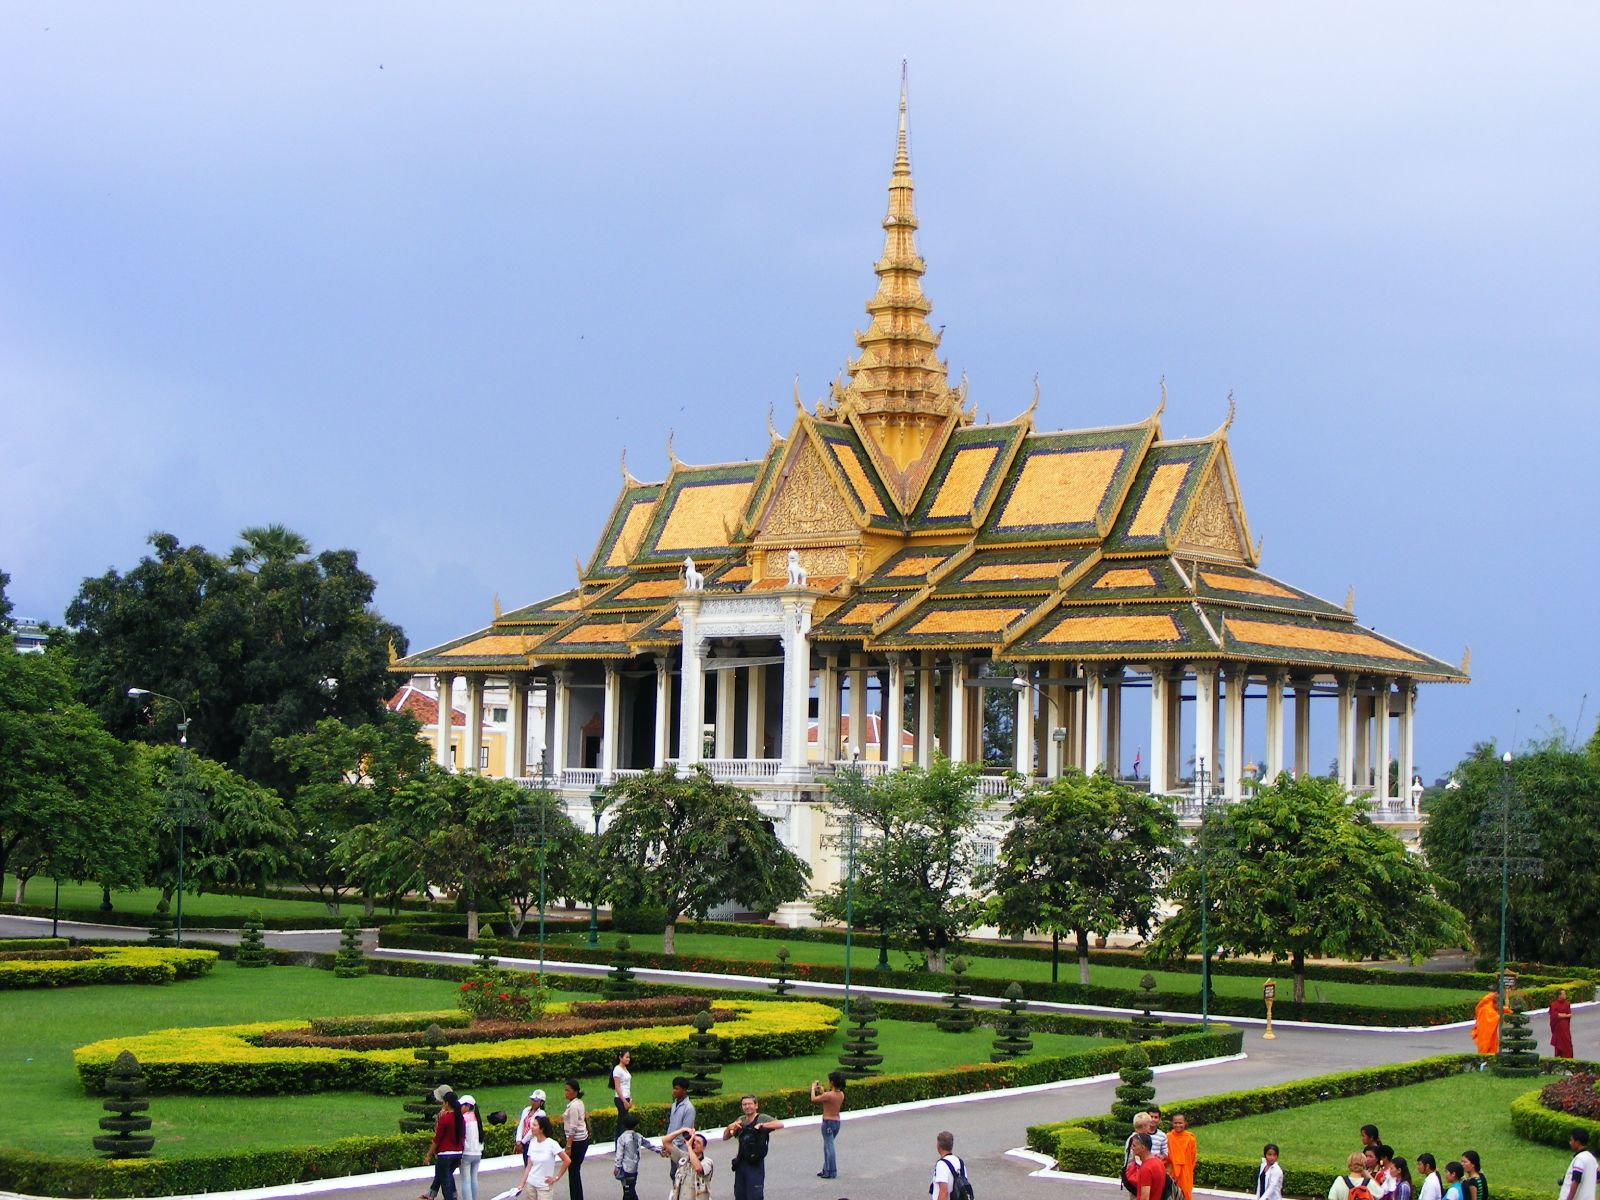 du lịch campuchia - Cung điện hoàng gia Campuchia